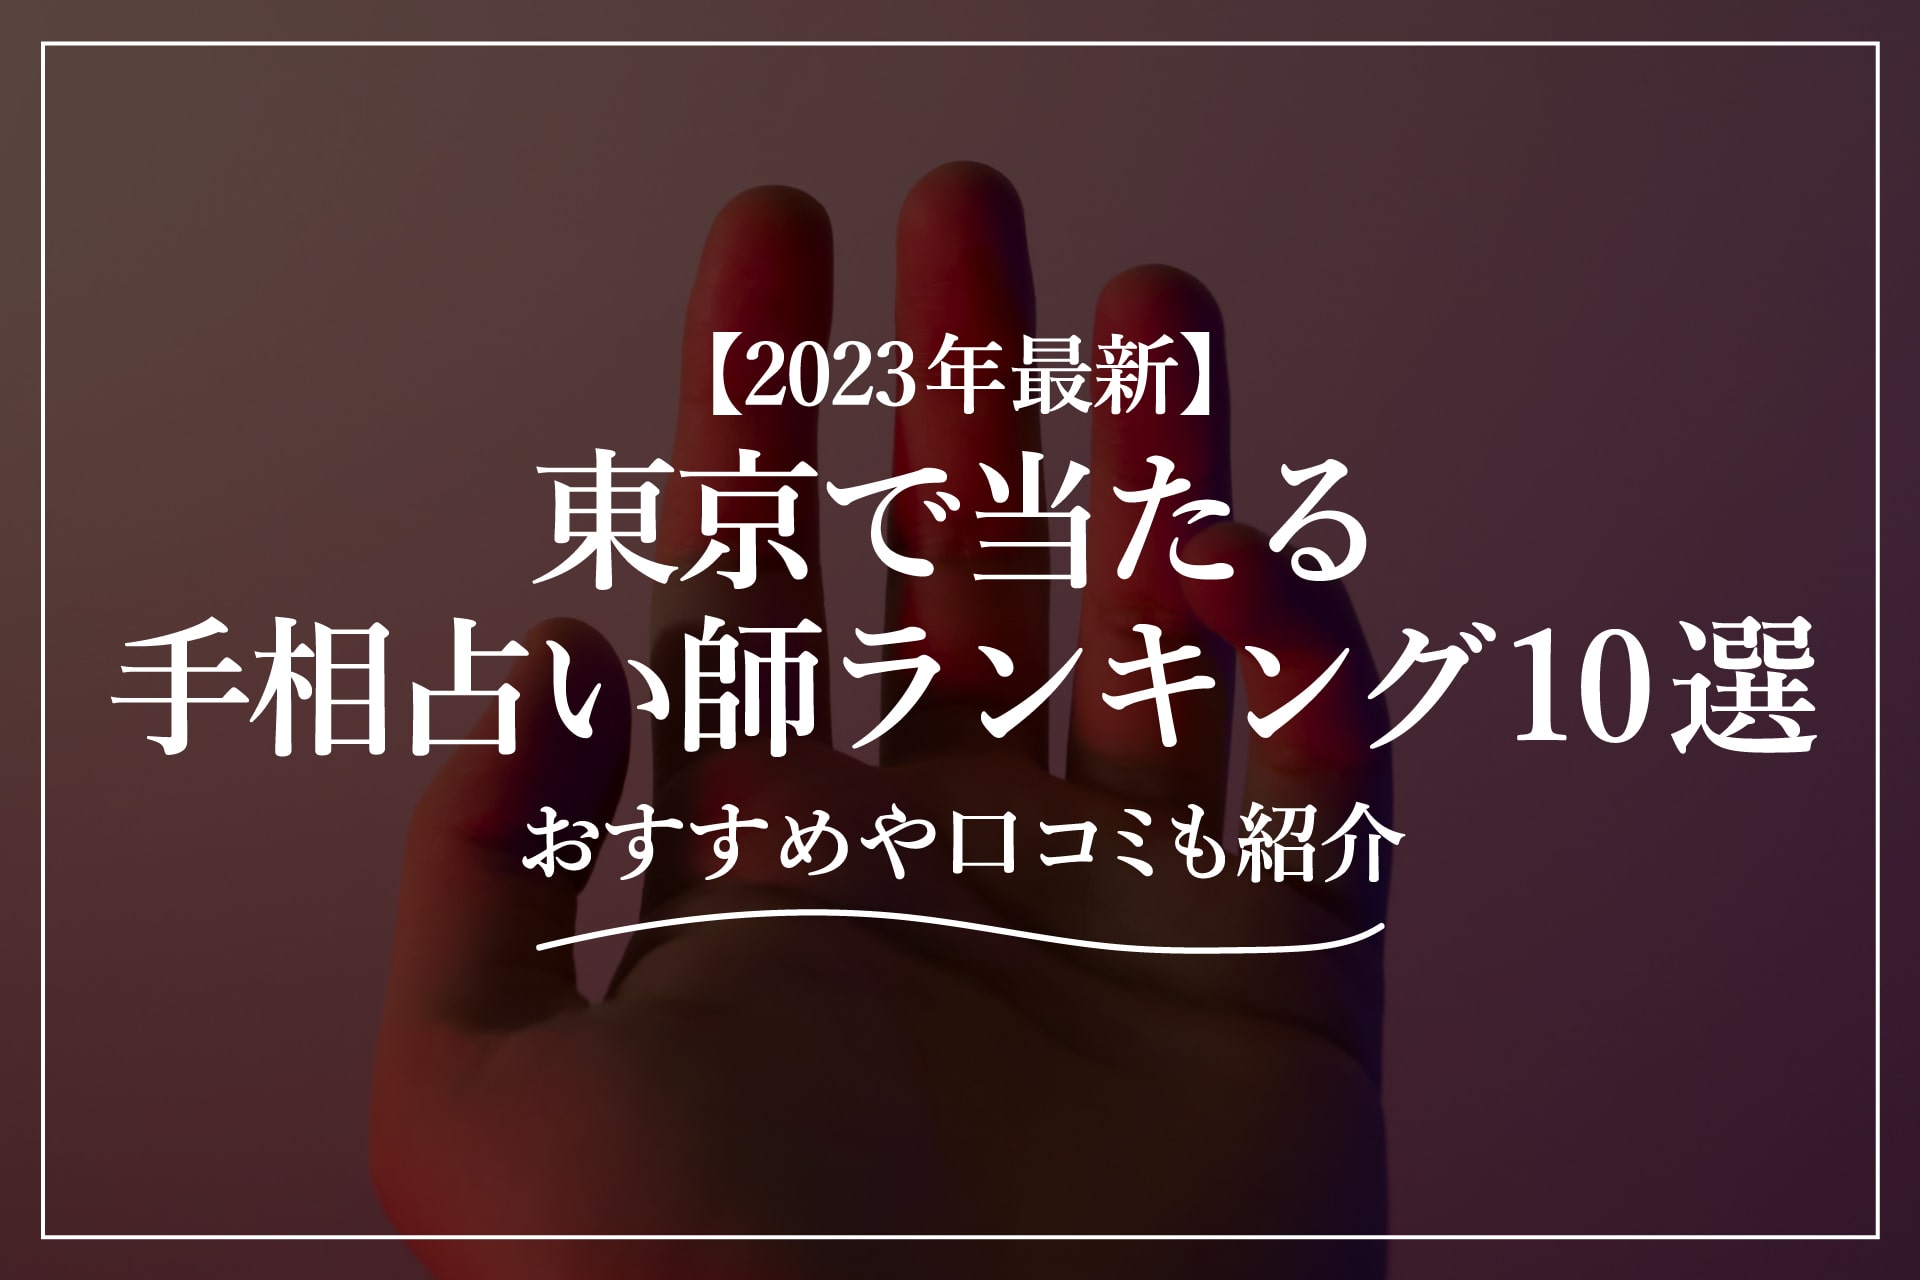 【2023年最新】東京で当たる手相占い師ランキング10選 | おすすめや口コミも紹介